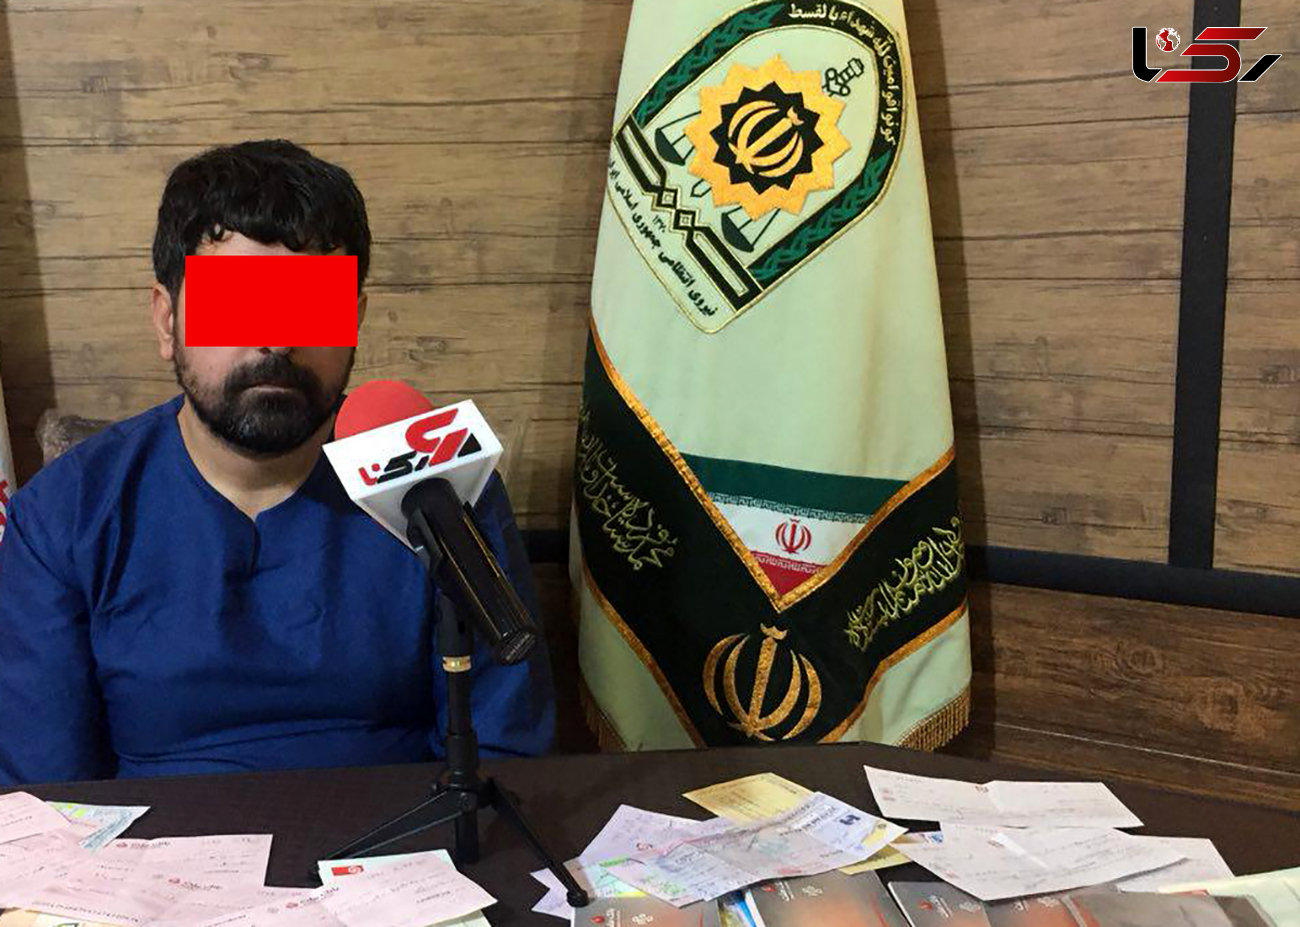 دستگیری کلاهبردار 52 میلیارد تومانی با 490 حساب بانکی / 5 دختر تهرانی خود را در اختیار این مرد شیطان صفت گذاشته بودند +فیلم و عکس